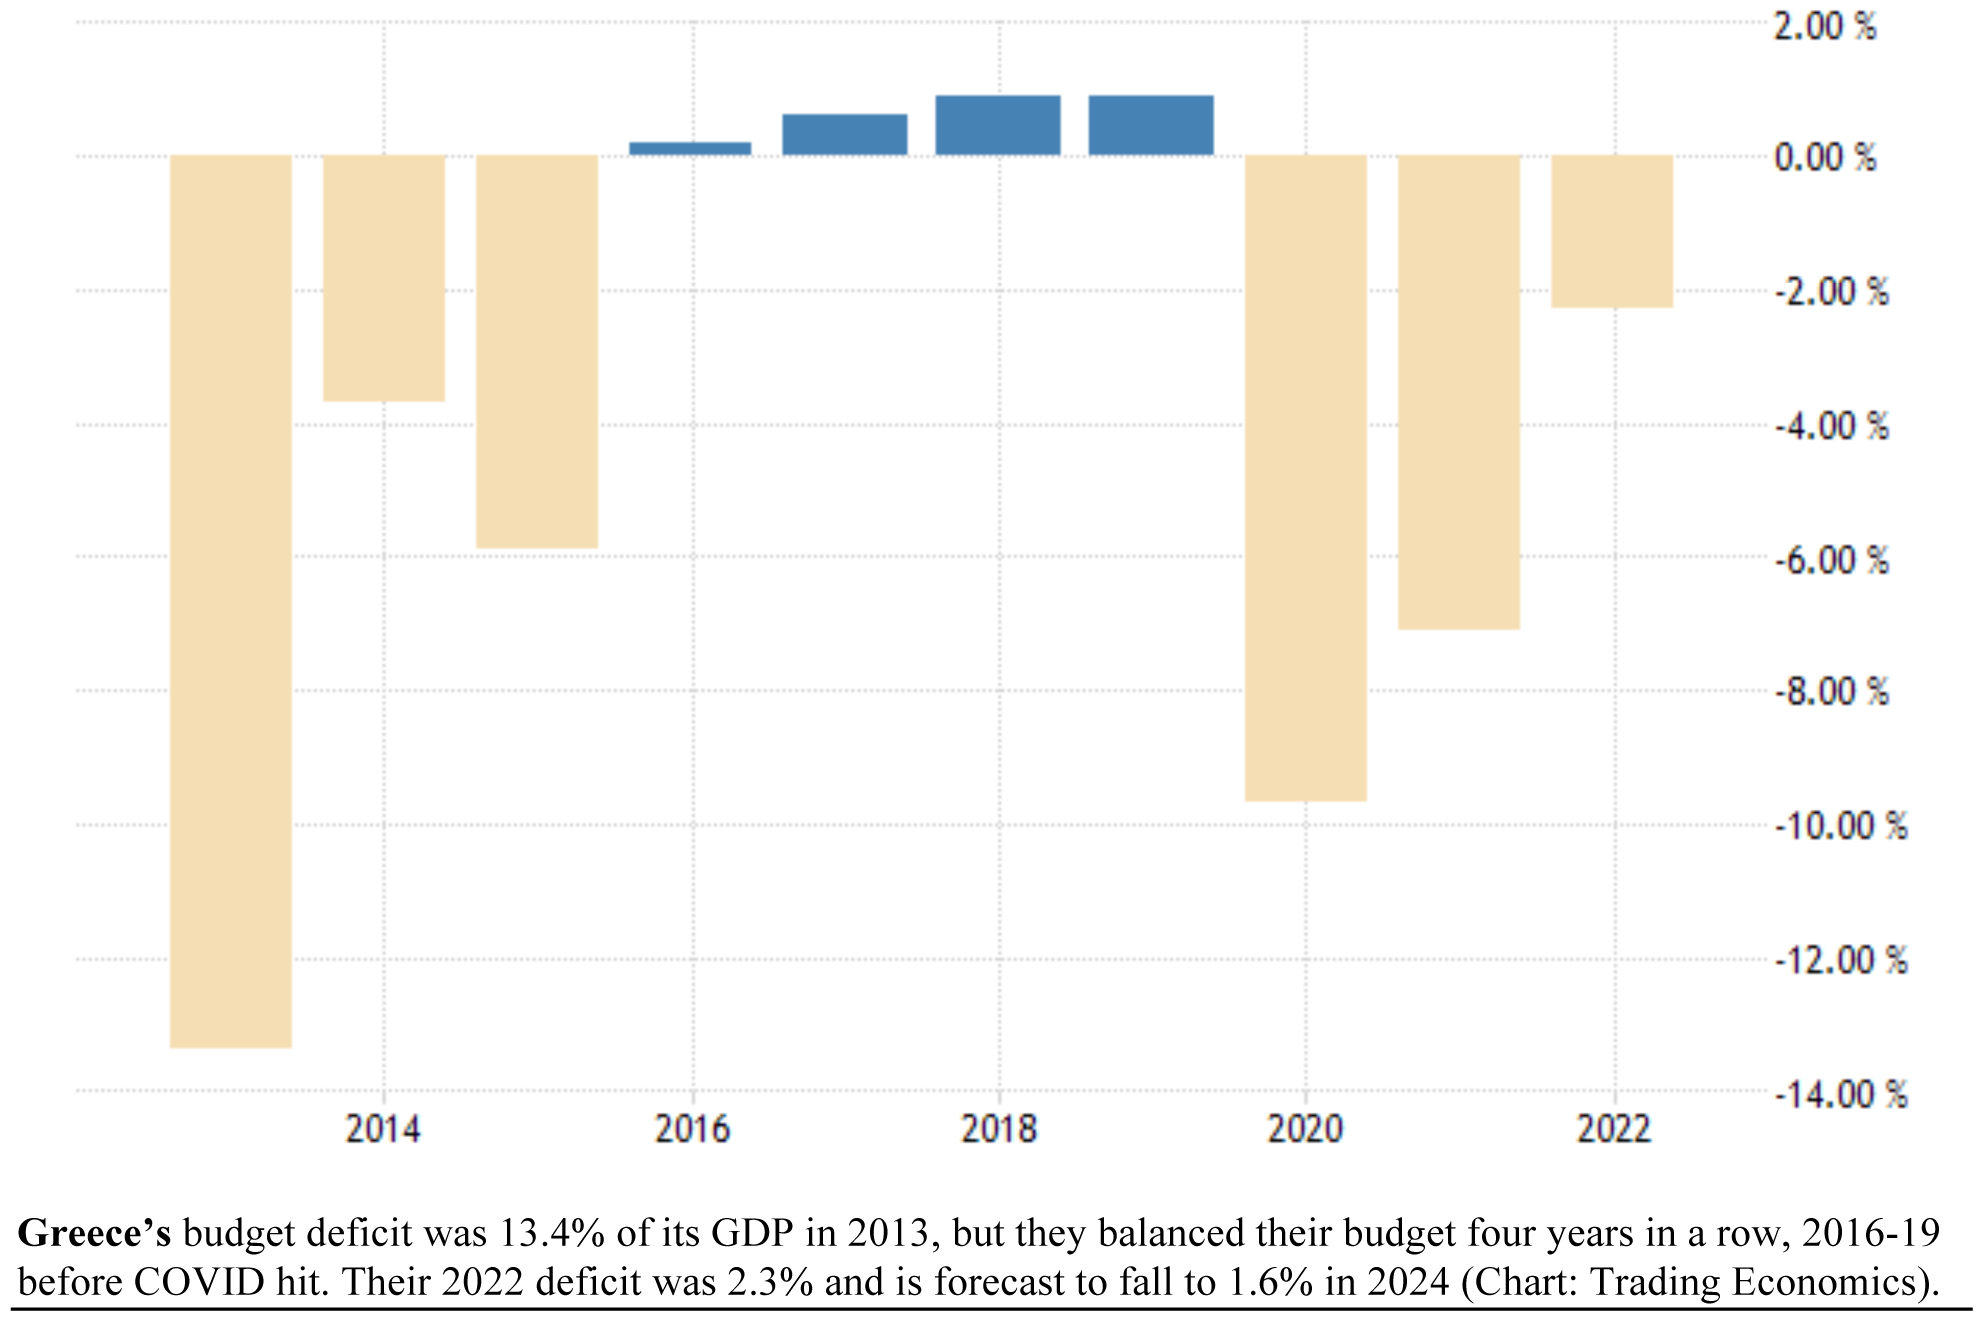 Greece's Budget Deficit Bar Chart